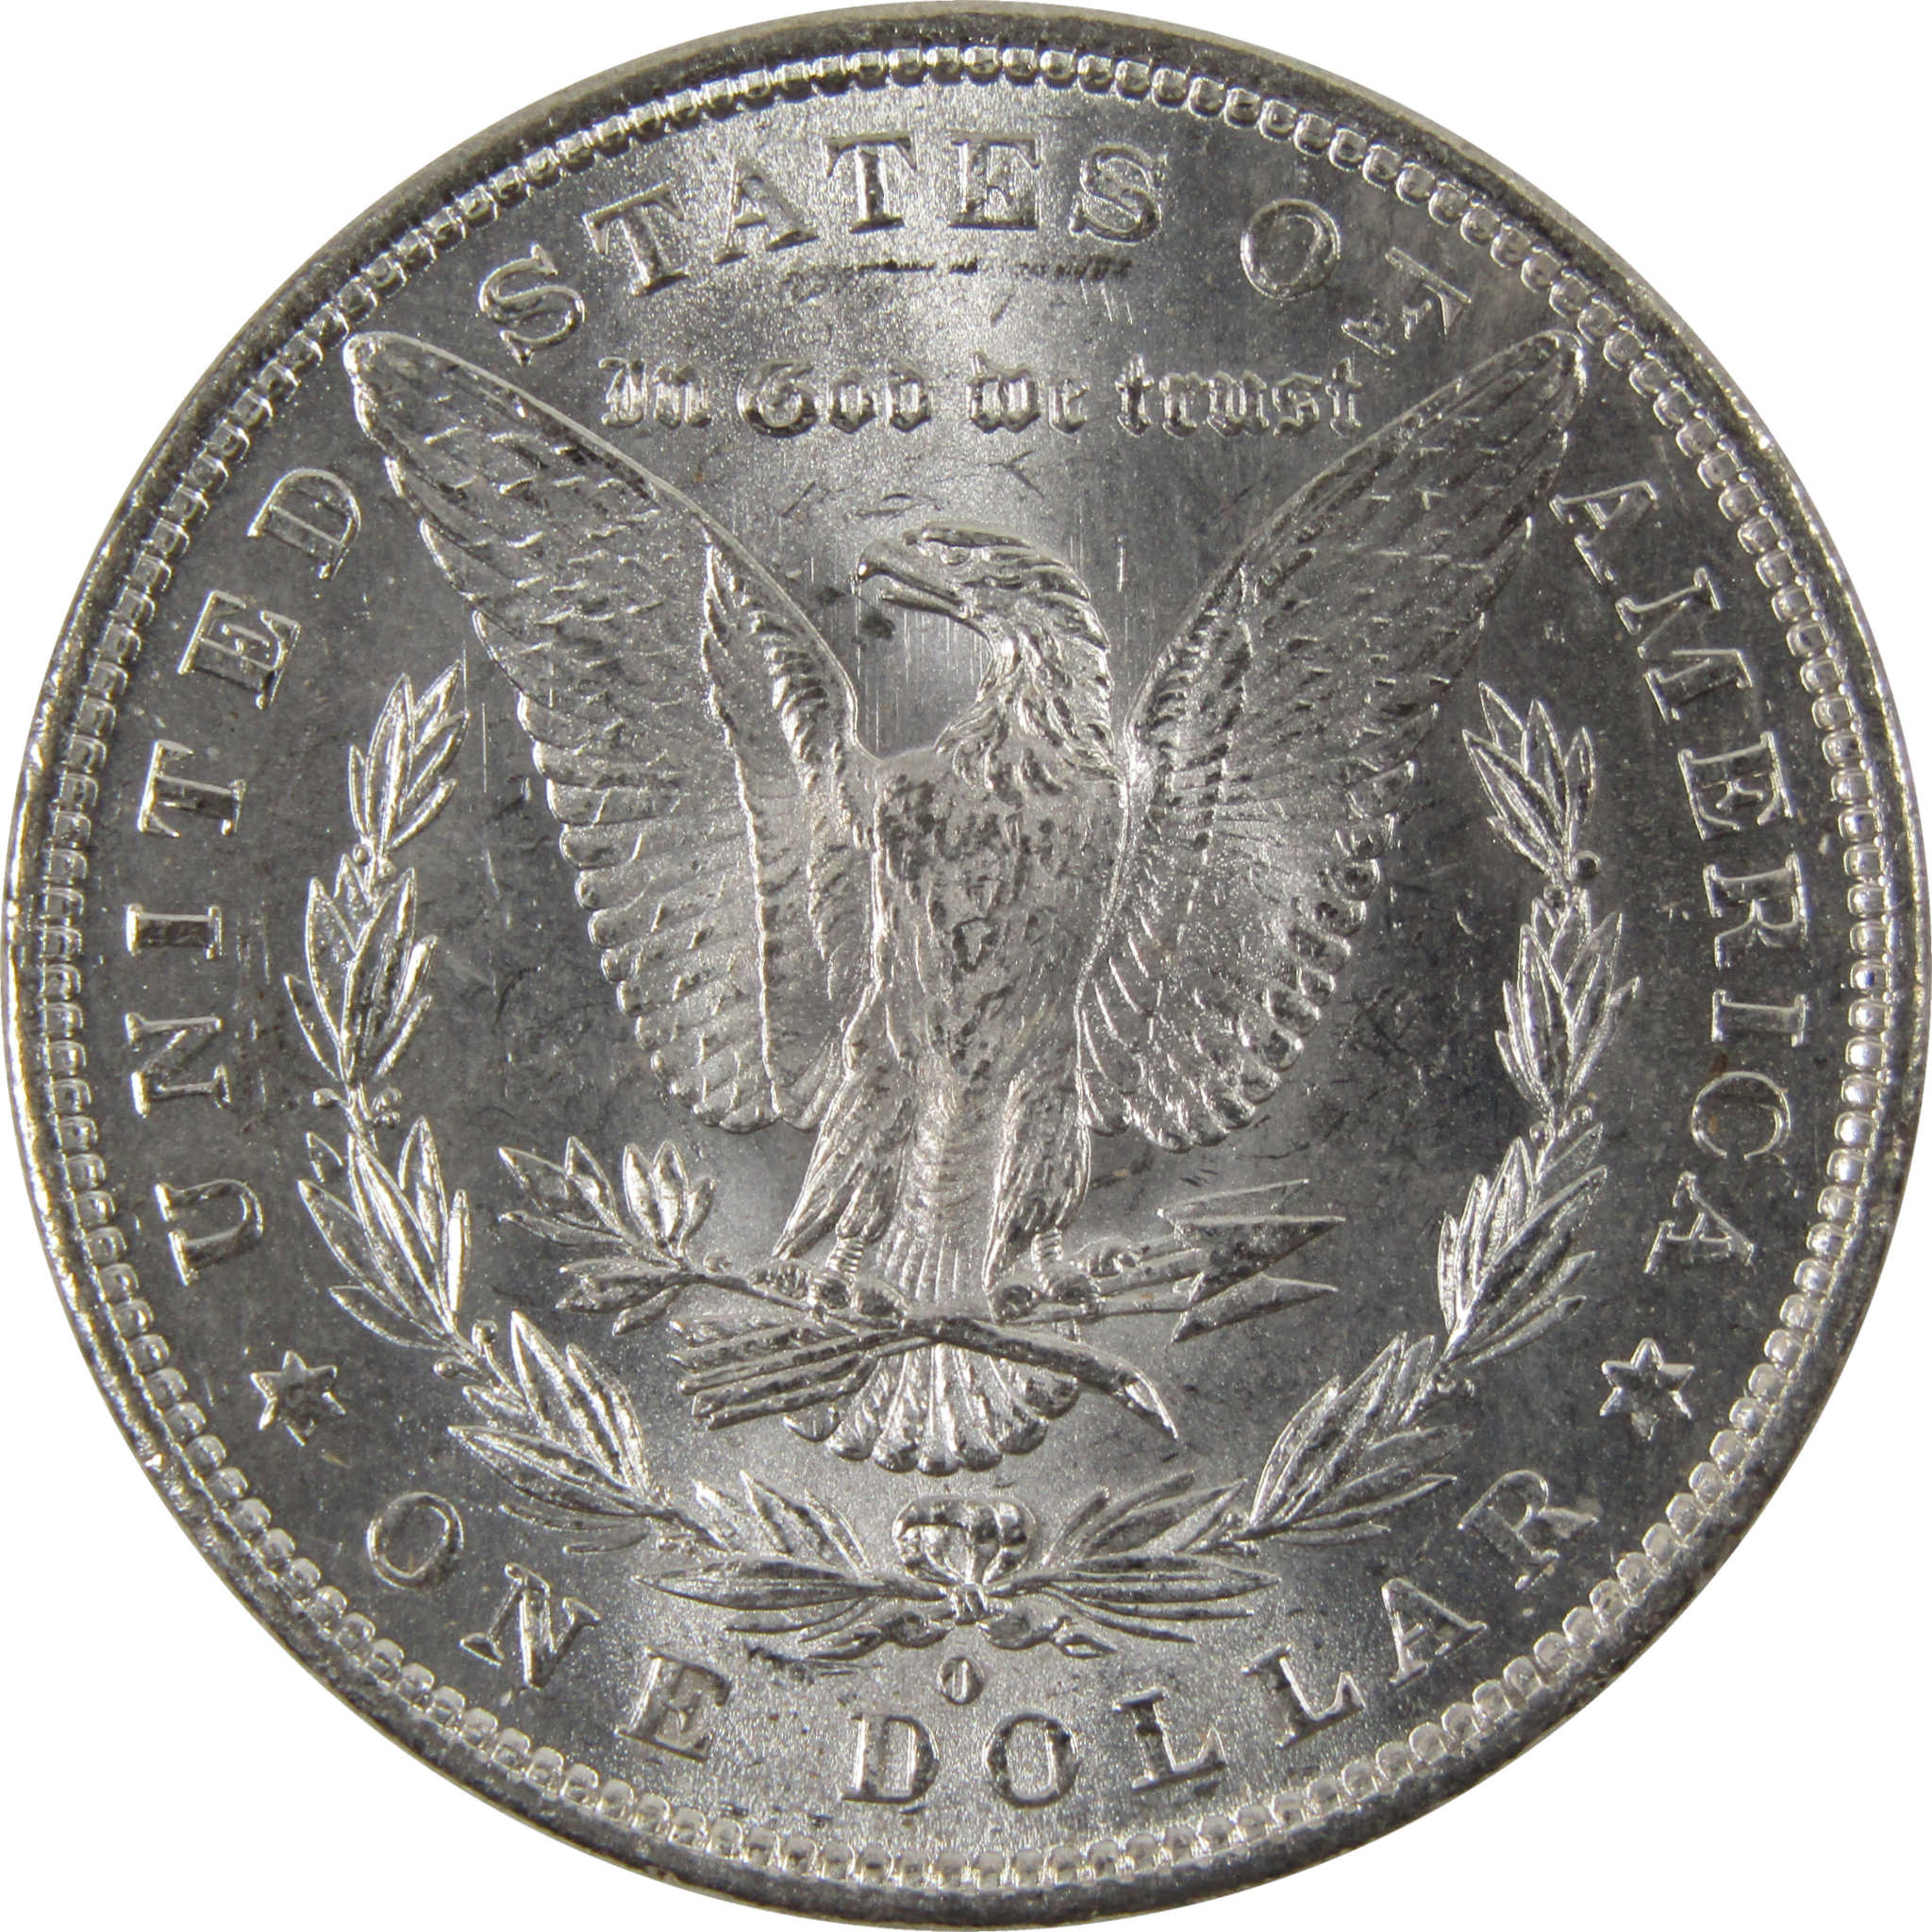 1881 O Morgan Dollar BU Uncirculated 90% Silver $1 Coin SKU:I8483 - Morgan coin - Morgan silver dollar - Morgan silver dollar for sale - Profile Coins &amp; Collectibles